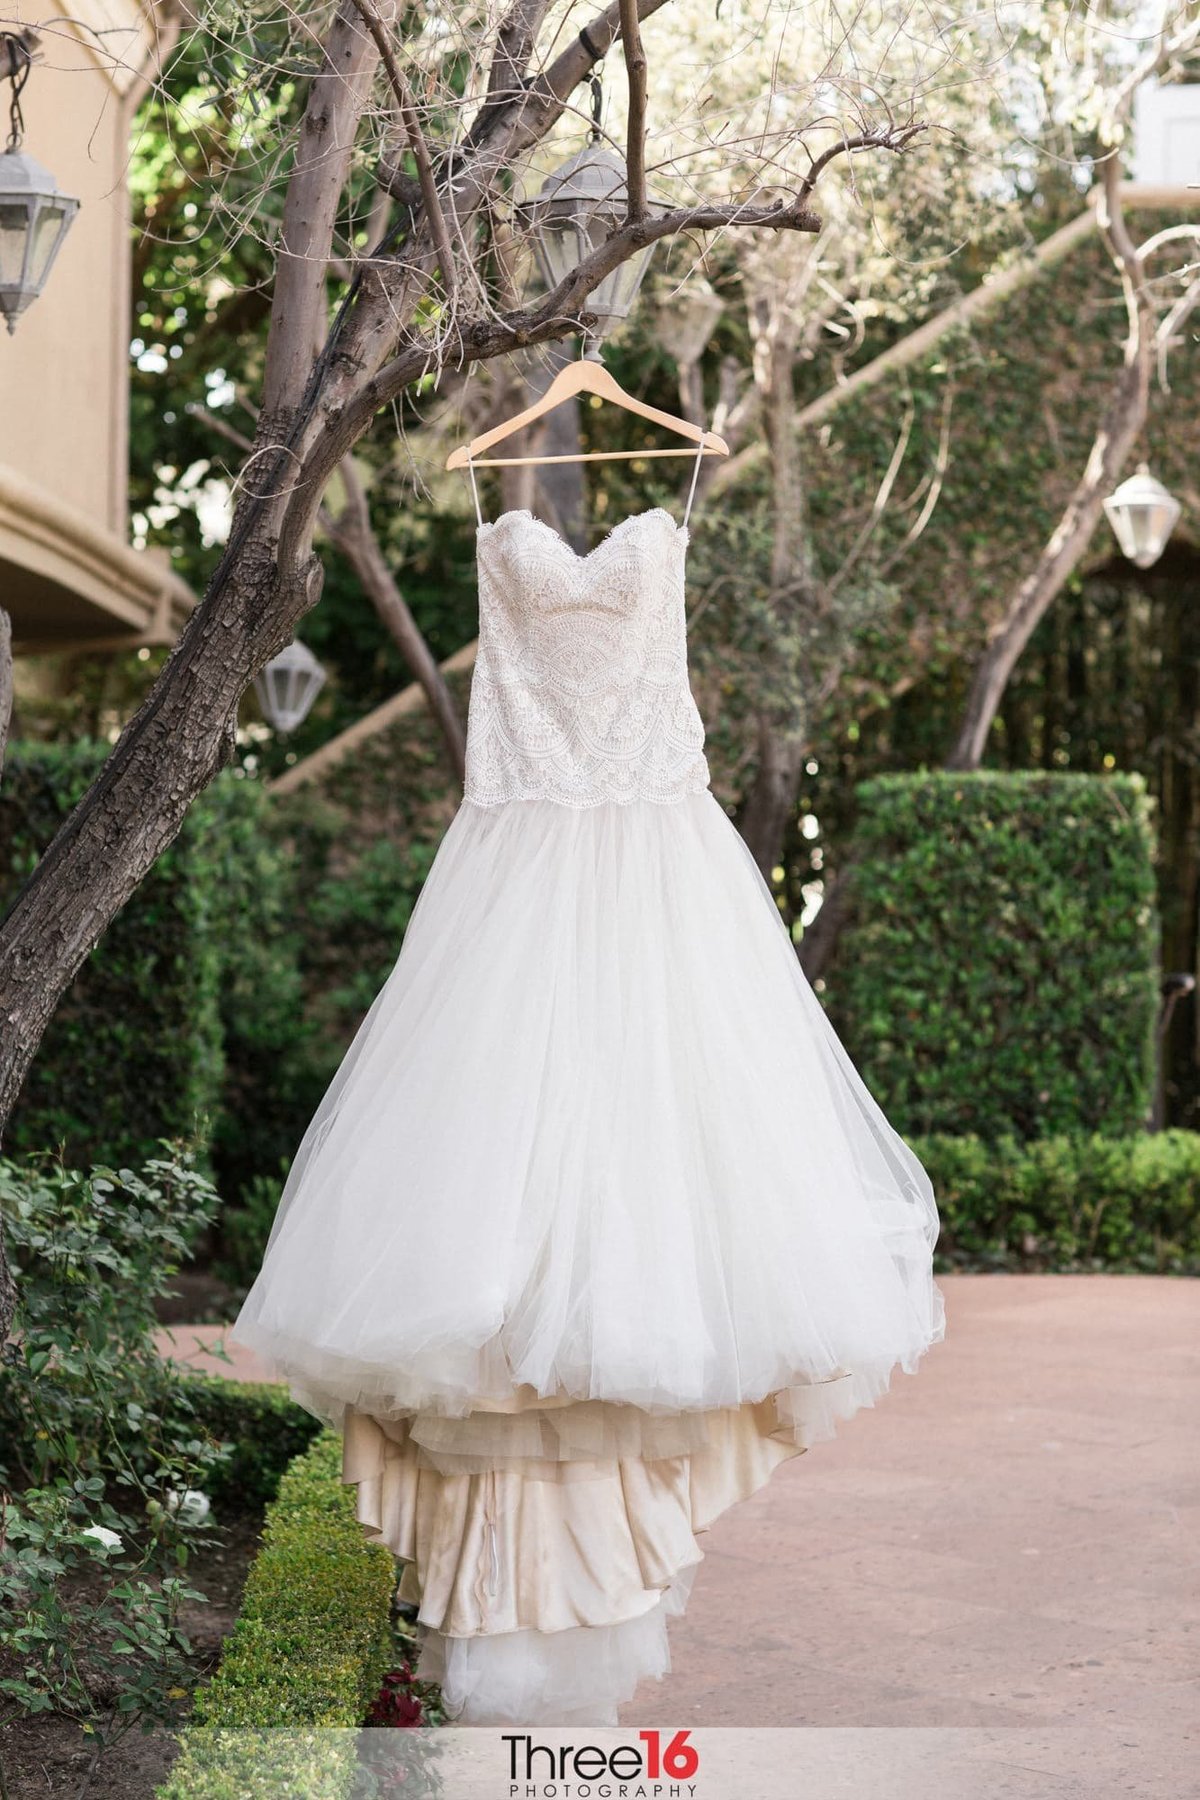 Bride's white dress hangs on display